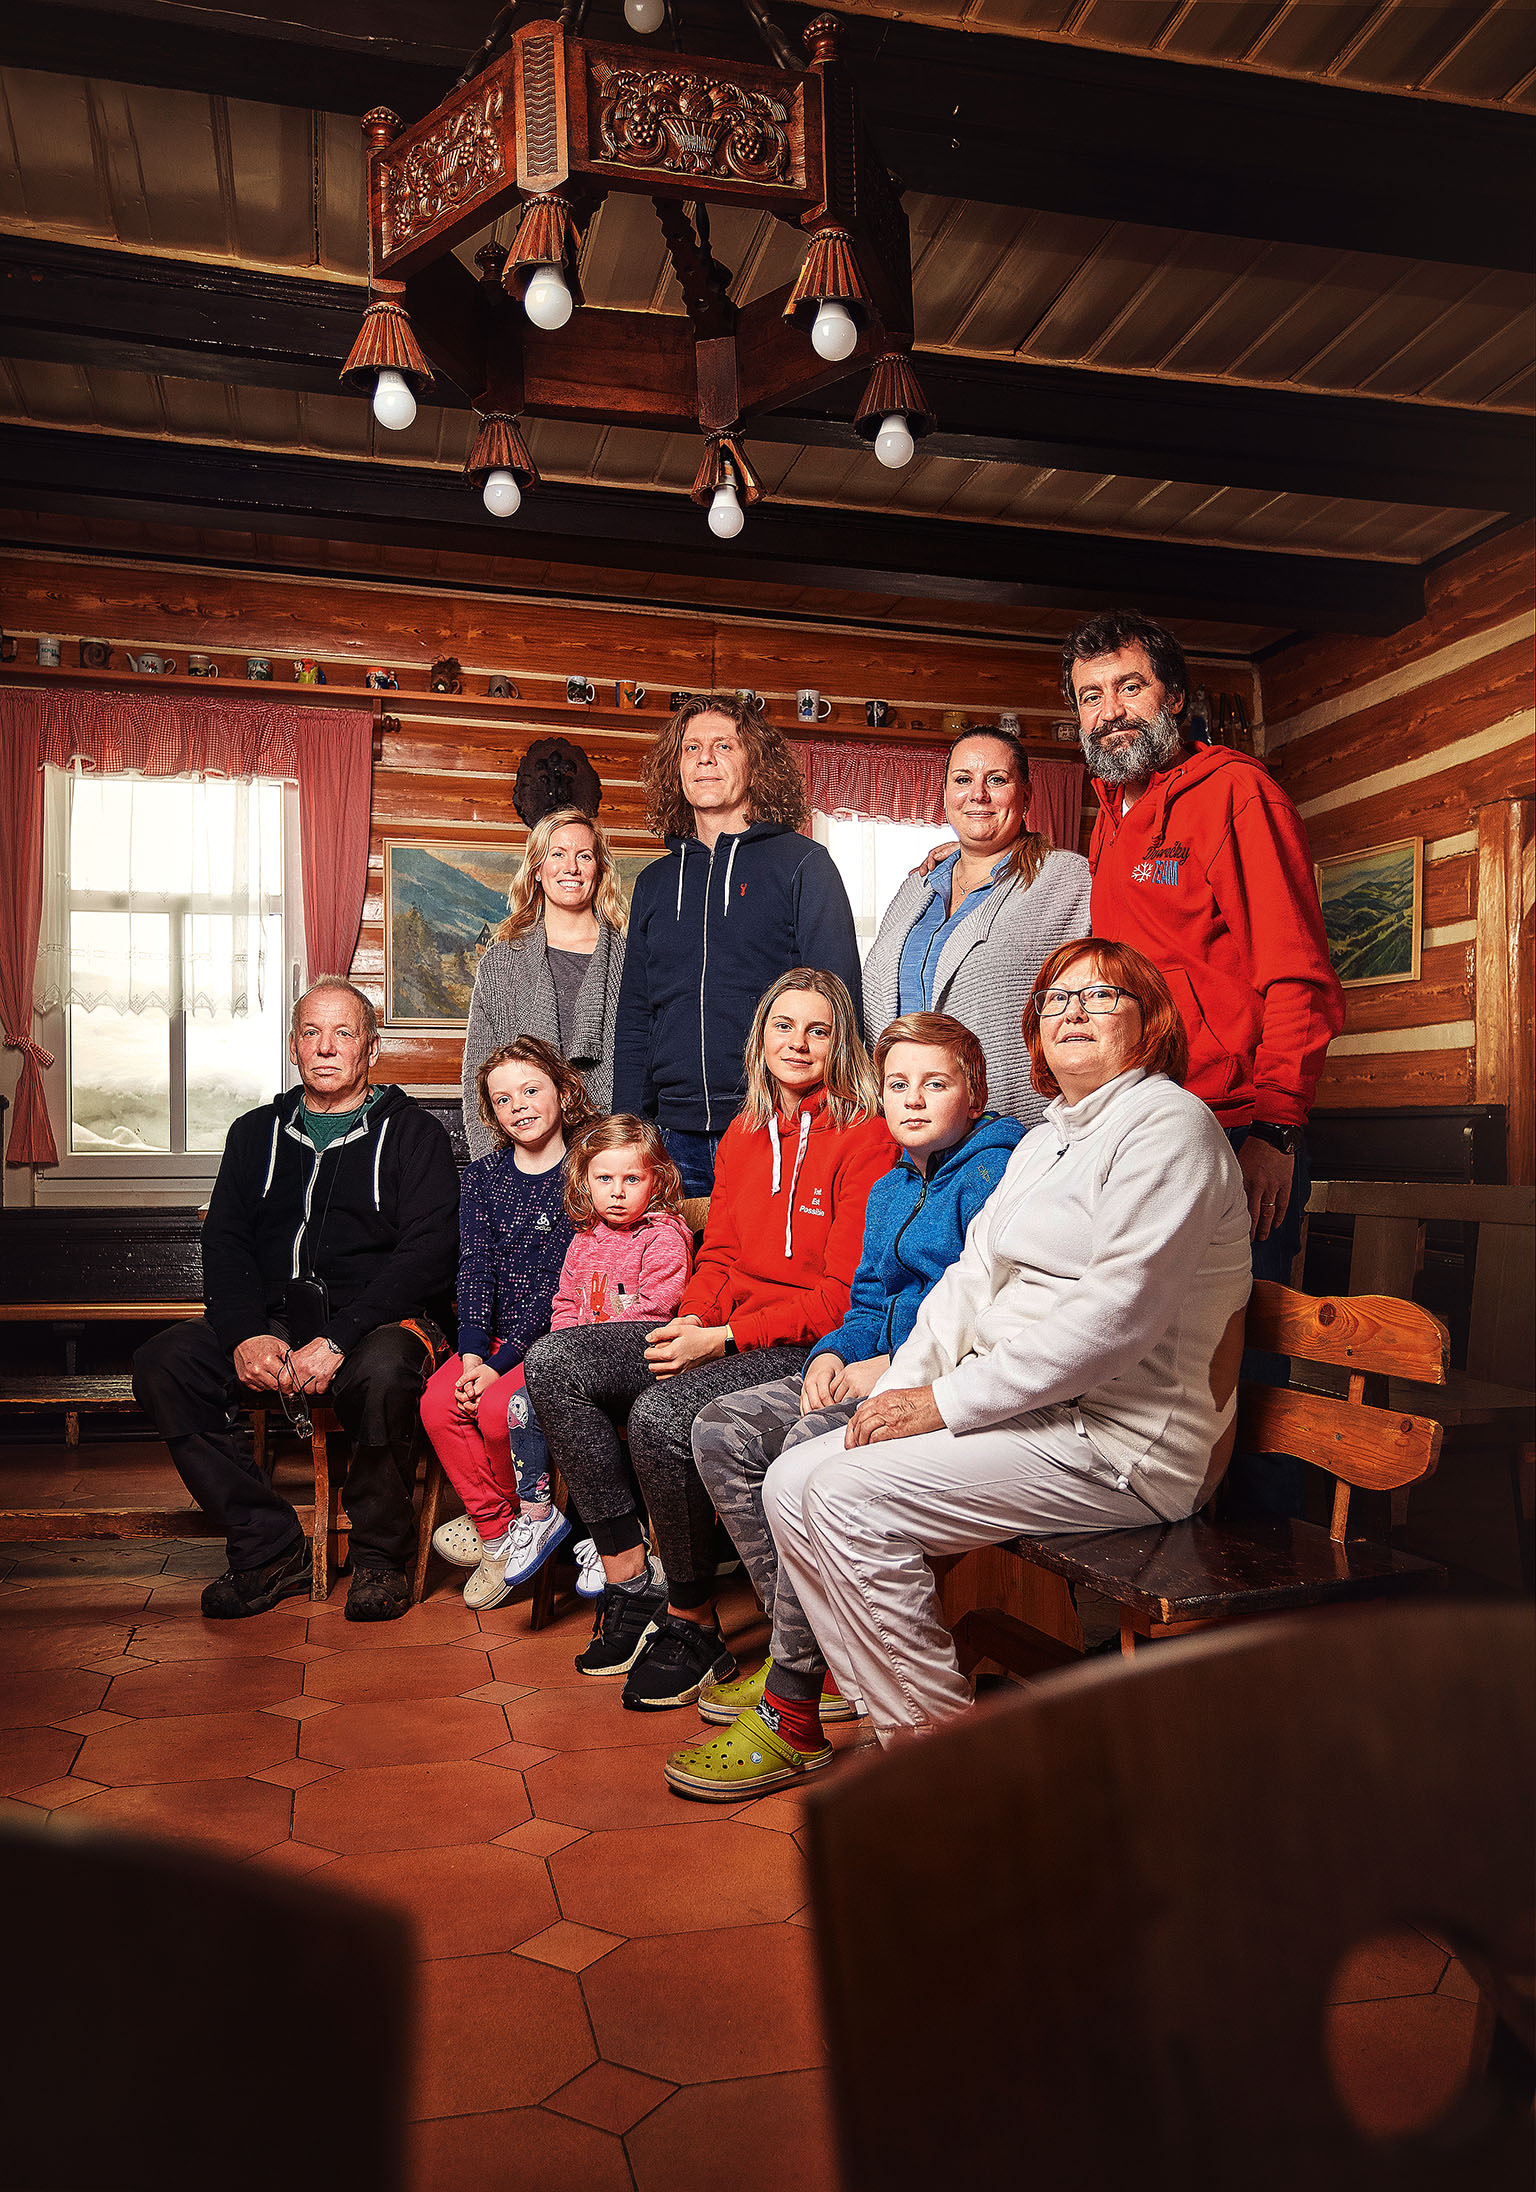 Vlevo dole sedí zakladatel firmy Milan Starý, vedle něj vnoučata Olivie, Klaudie, Antonie a Albert a manželka Věra Stará. Nahoře zleva dcera Petra Pouchová s manželem Jiřím a dcera Lucie Hrušková s manželem Matějem.